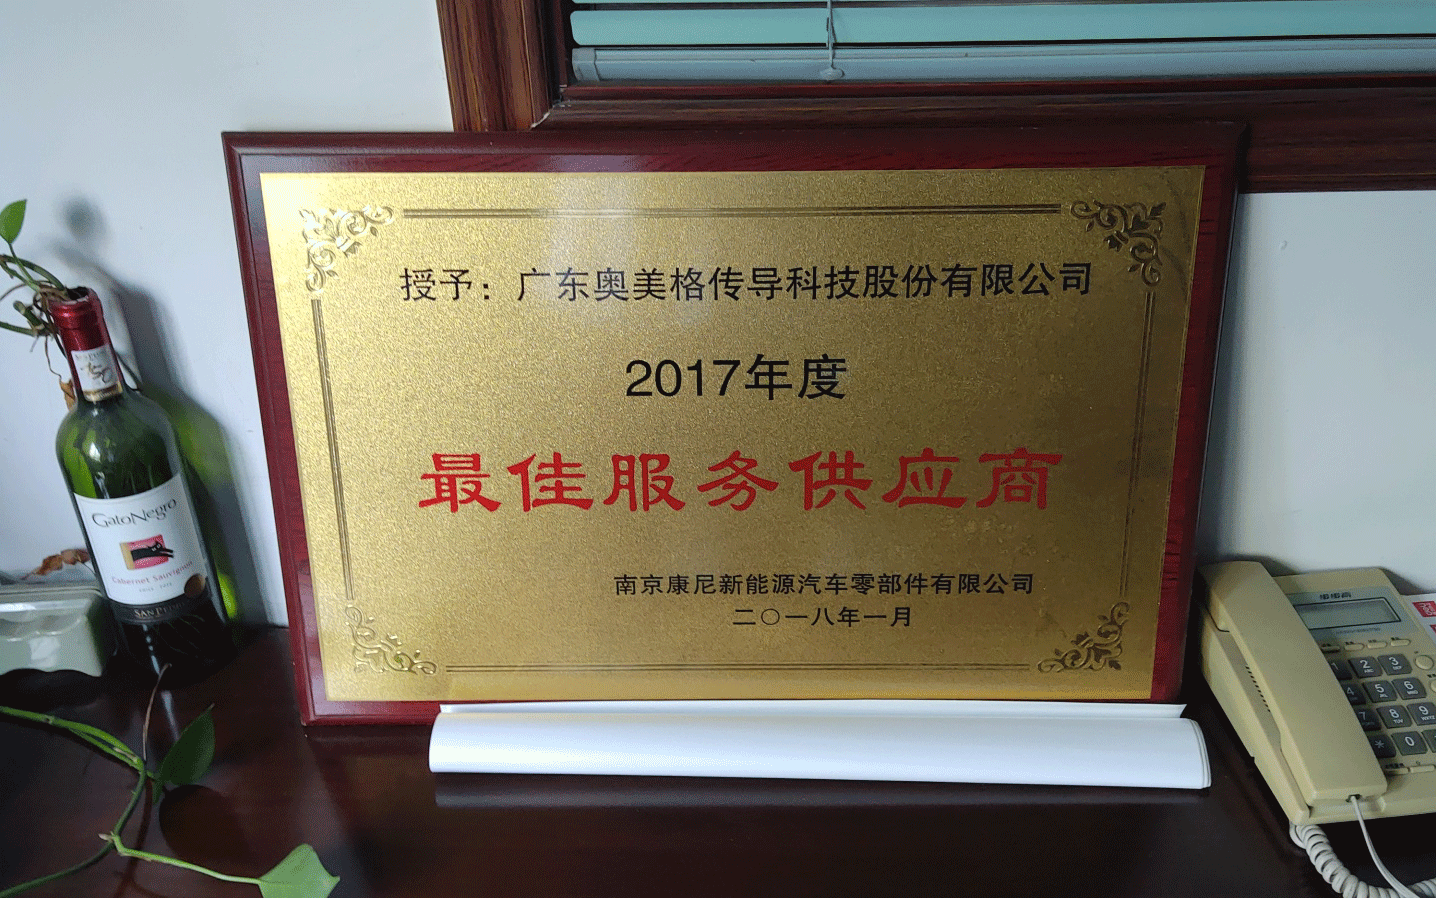 OMG hat den Nanjing KANGNI Outstanding Supplier Award gewonnen